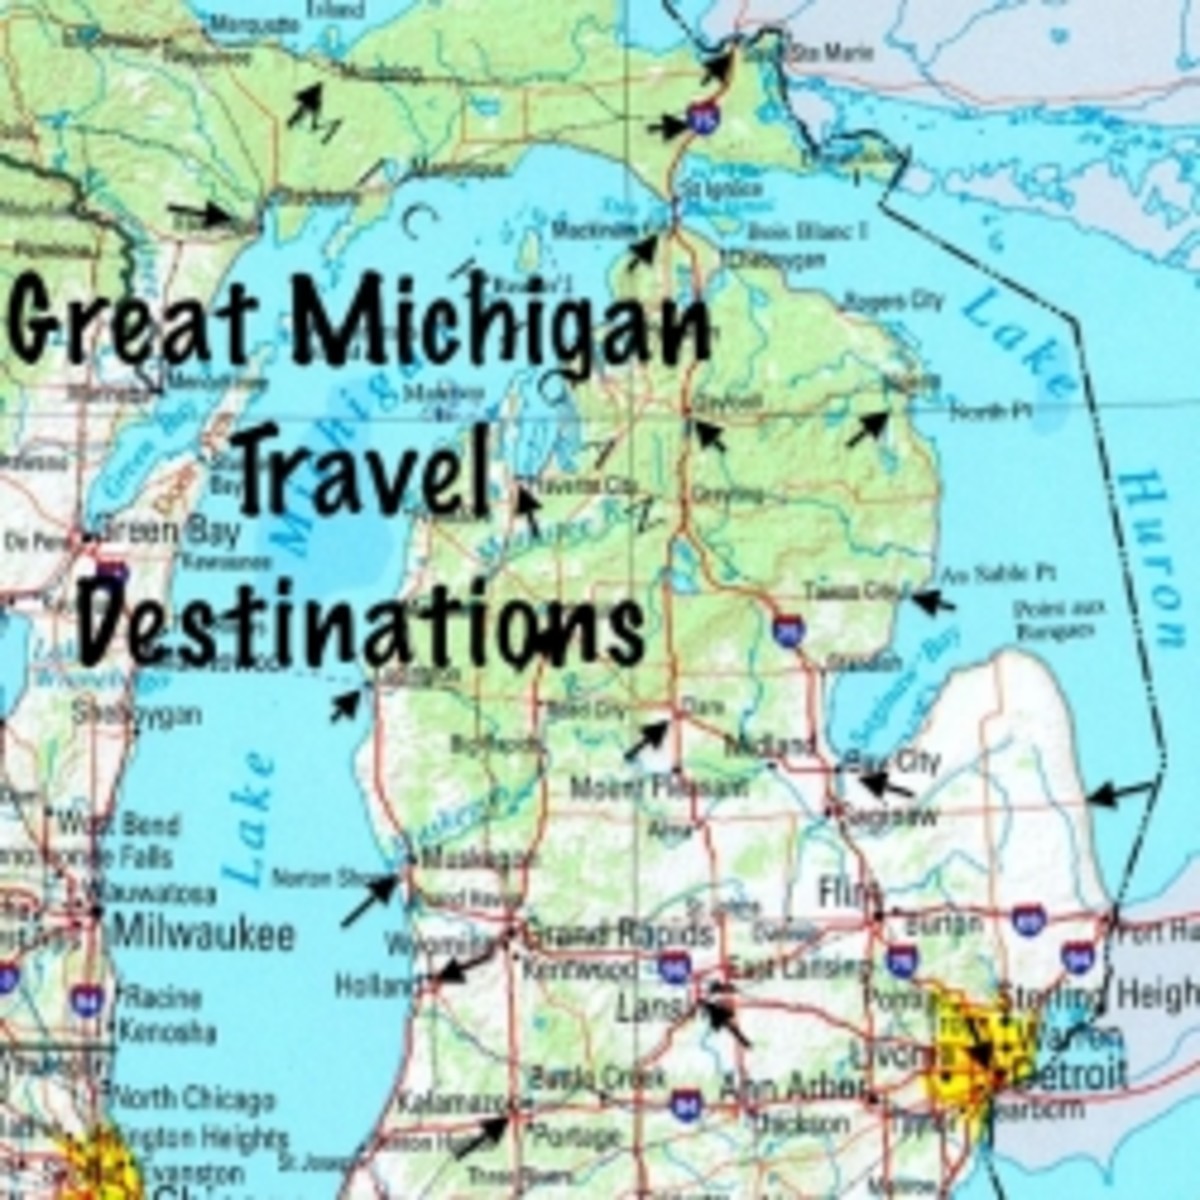 Five Great Michigan Travel Destinations